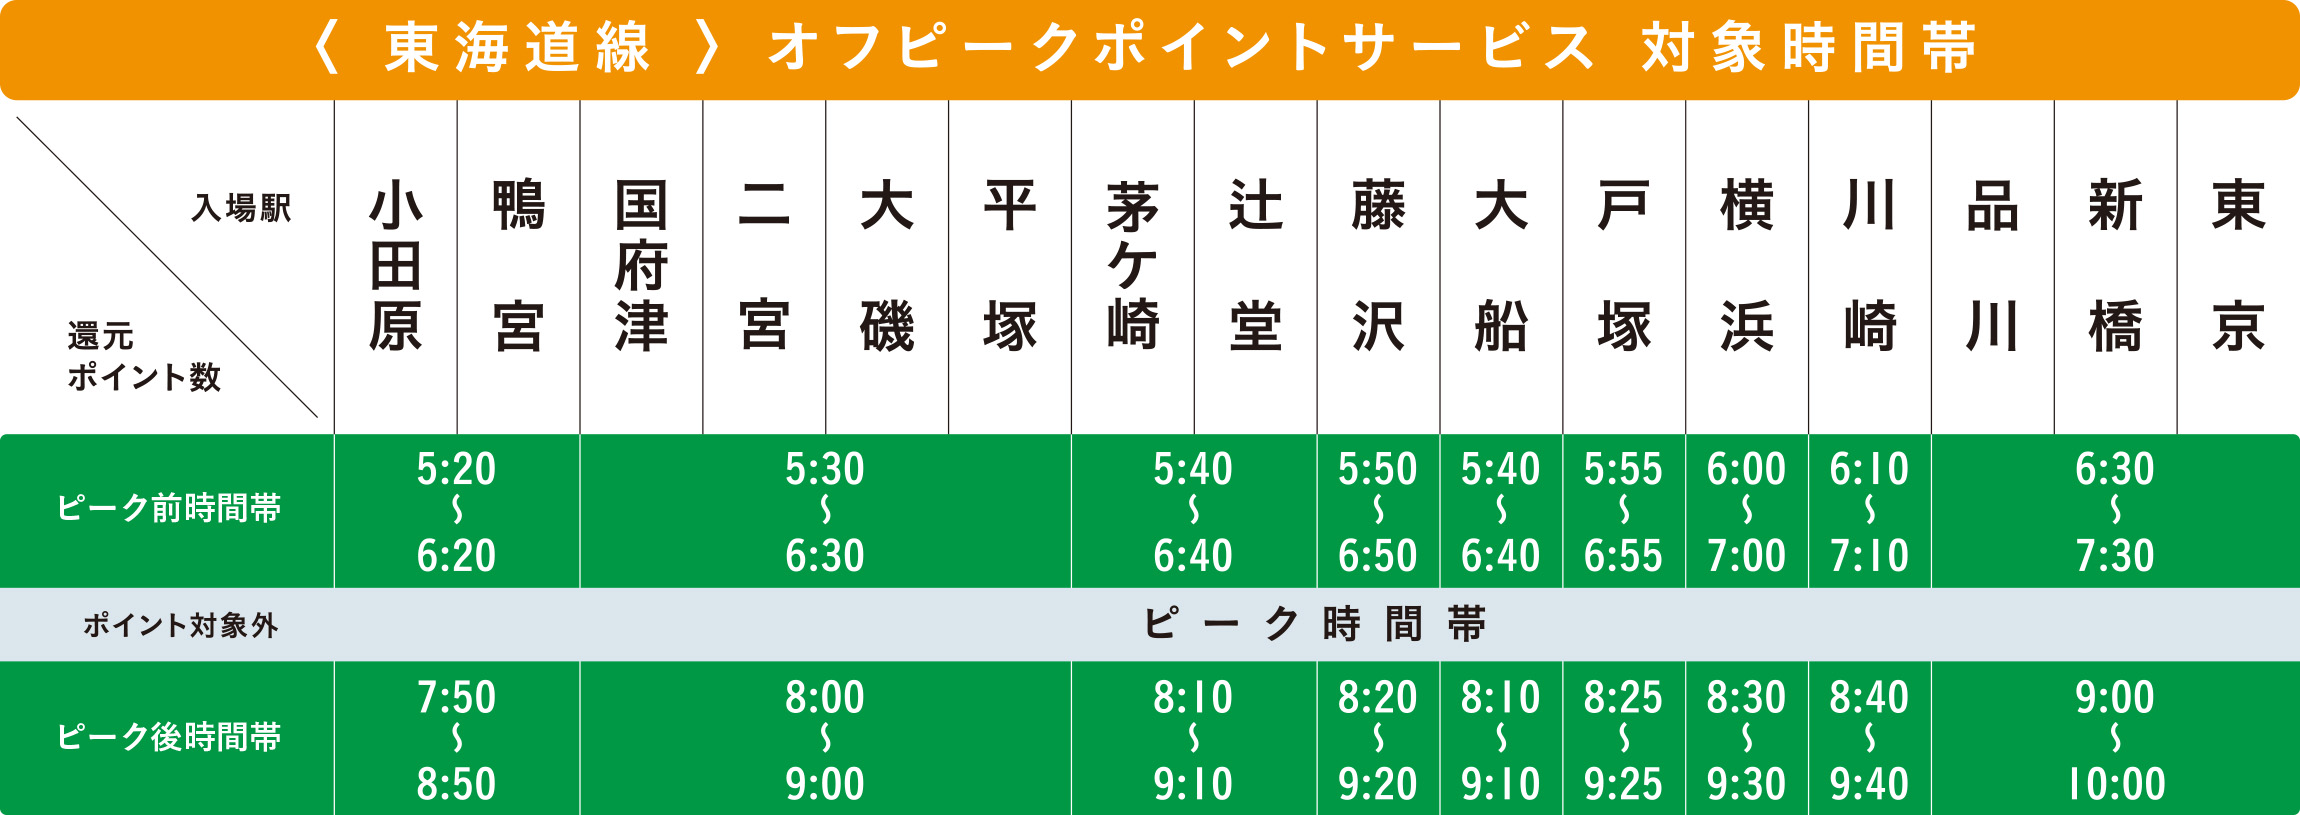 東海道線オフピークポイントサービス対象時間帯